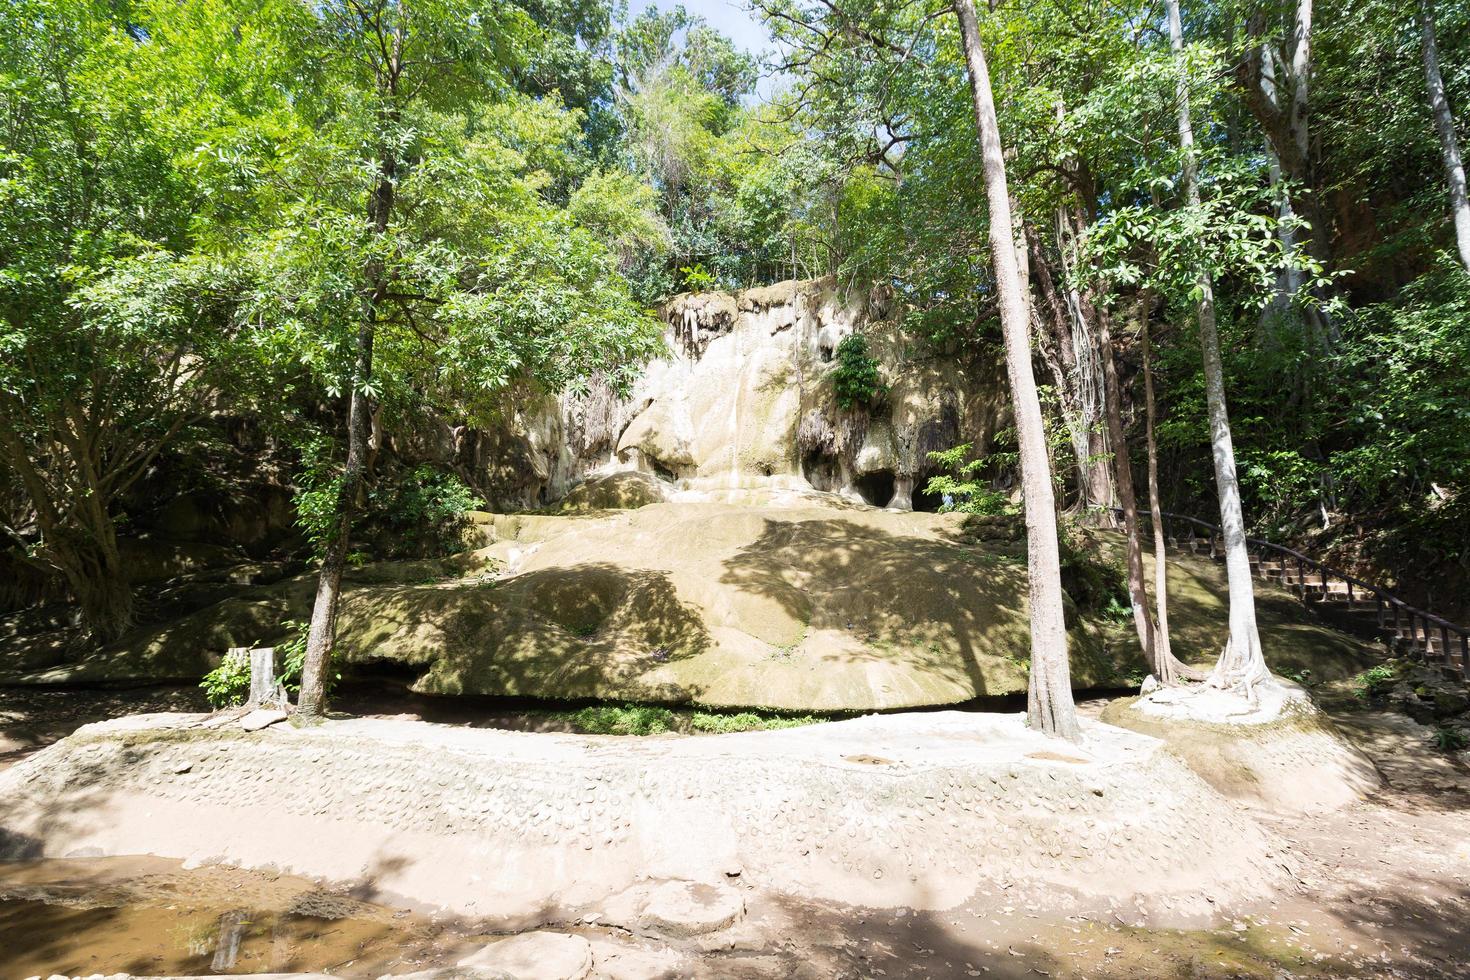 Rocks of the dry Erawan waterfall photo